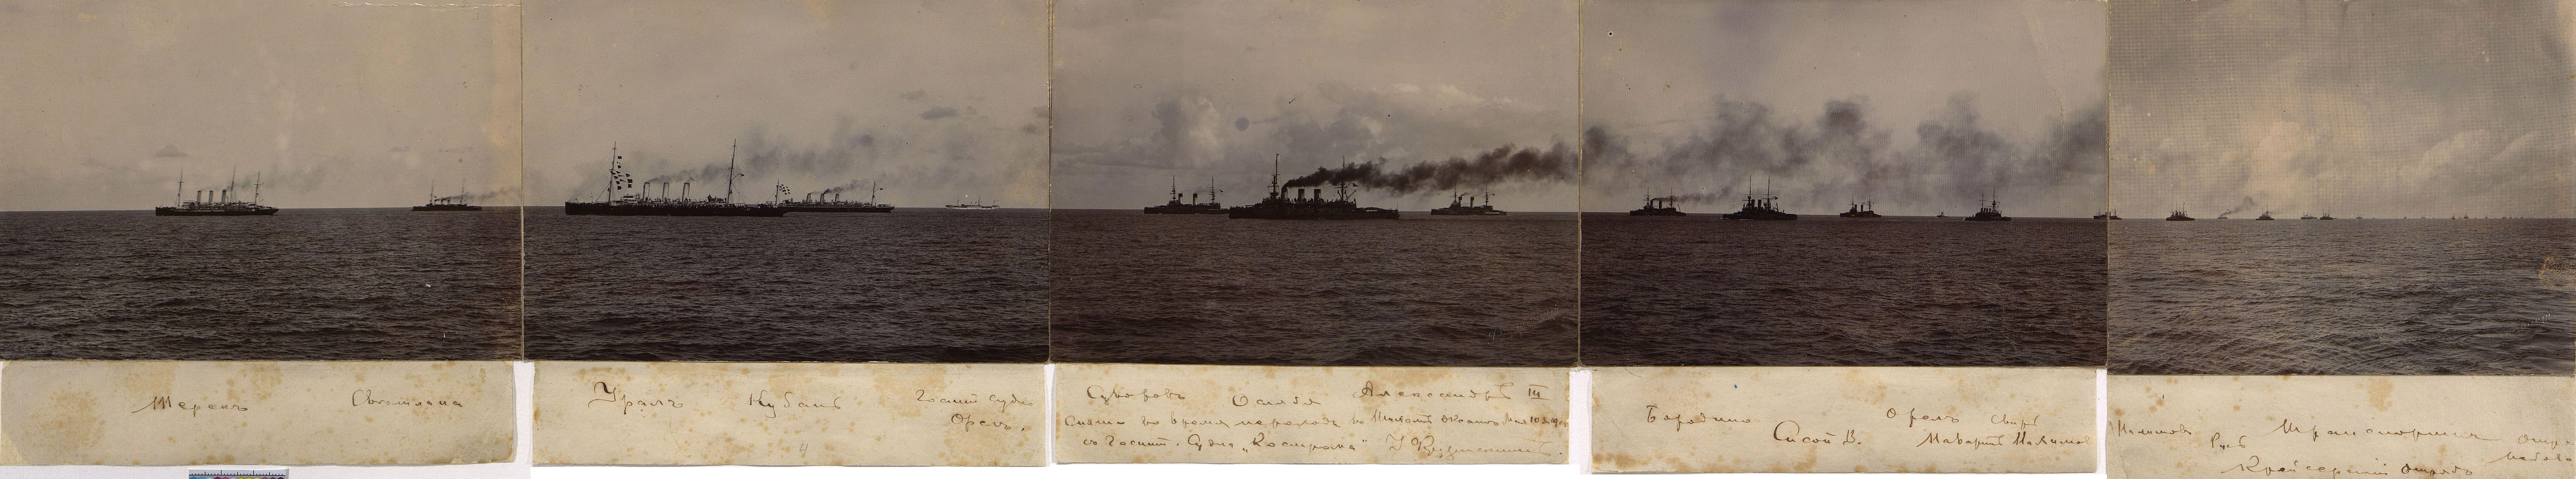 Балтийского моря эскадру получившую название тихоокеанской эскадры. Цусима 1904. Цусимское сражение 1905.